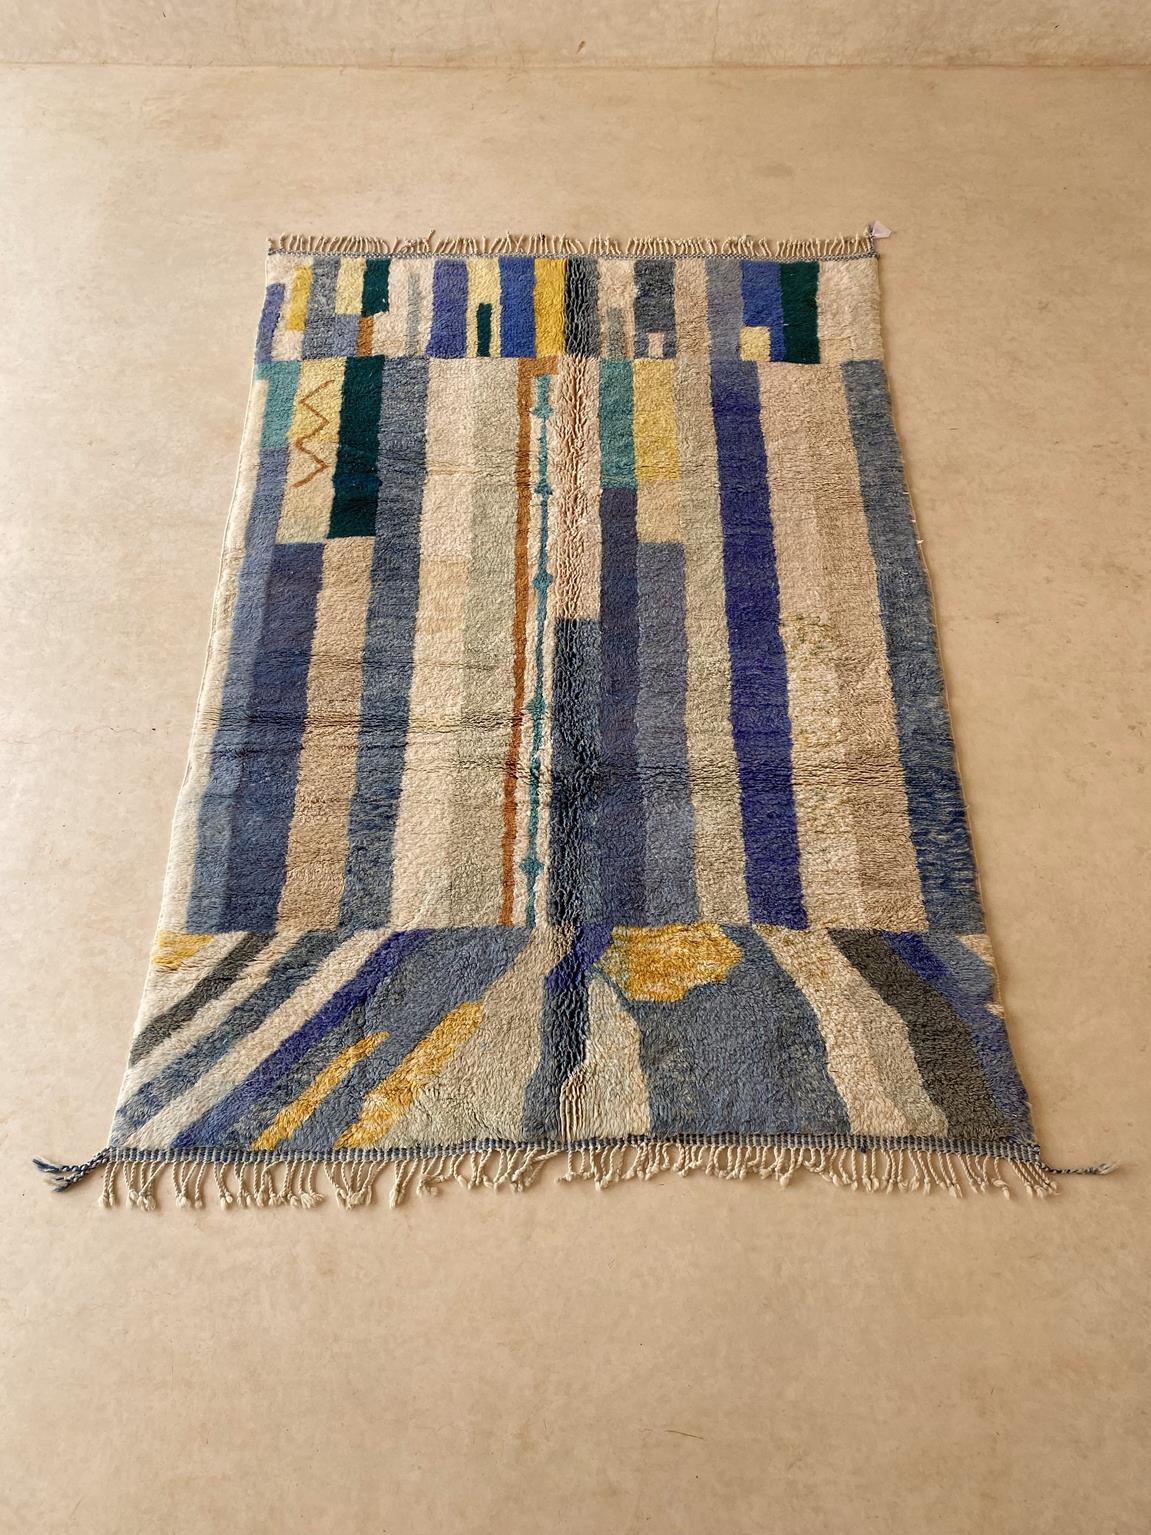 Dieser große, moderne Mrirt-Teppich wurde von Kunsthandwerkern in der Gegend von Khenifra im Atlasgebirge in Marokko hergestellt. Gruppen von Frauen weben dort noch von Hand auf traditionellen, vertikalen Webstühlen, um diese neuen Teppiche